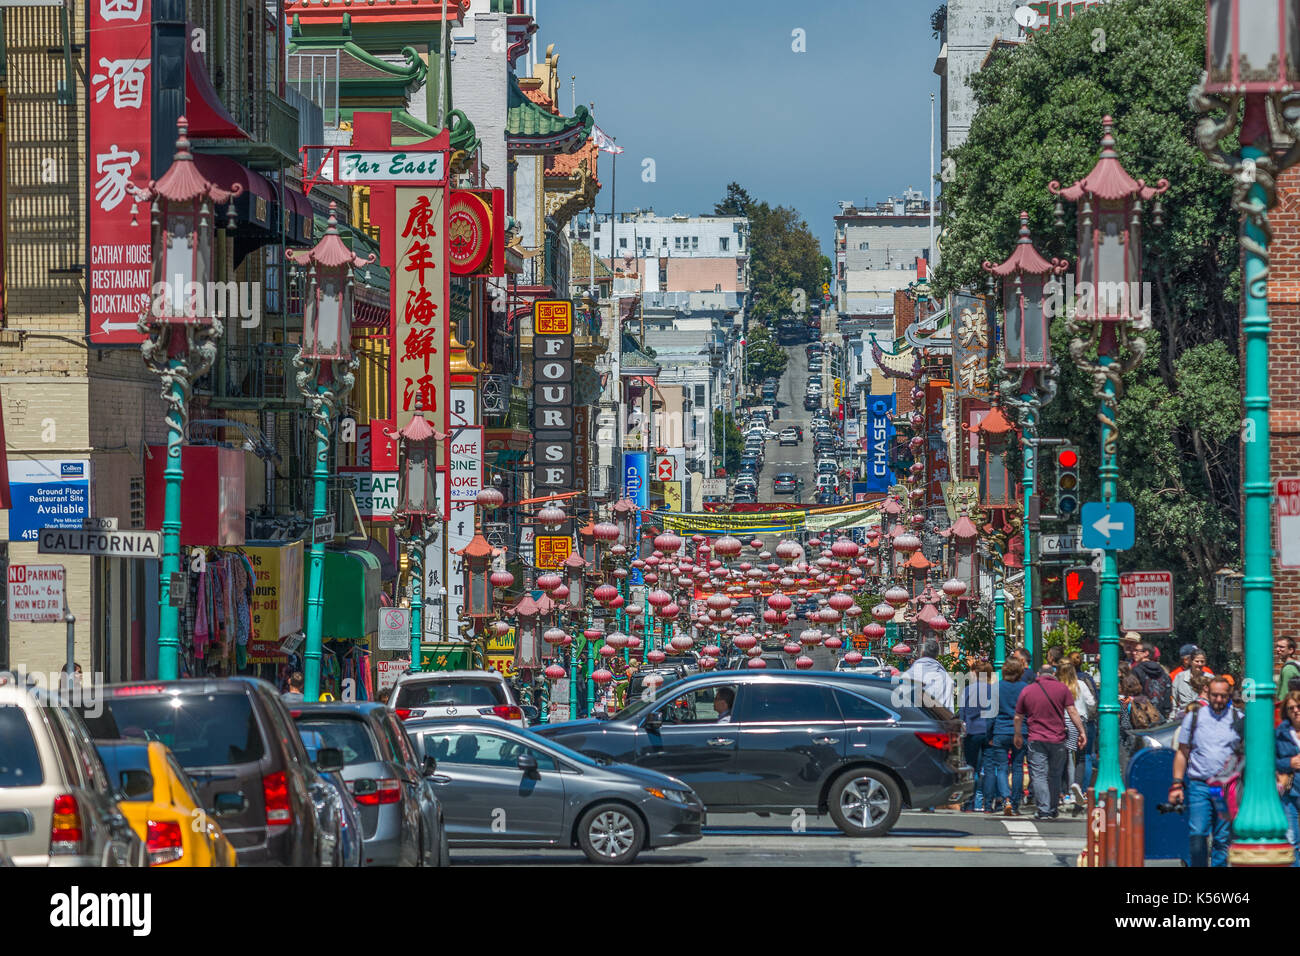 Dans les rues de China Town, San Francisco, CA Banque D'Images